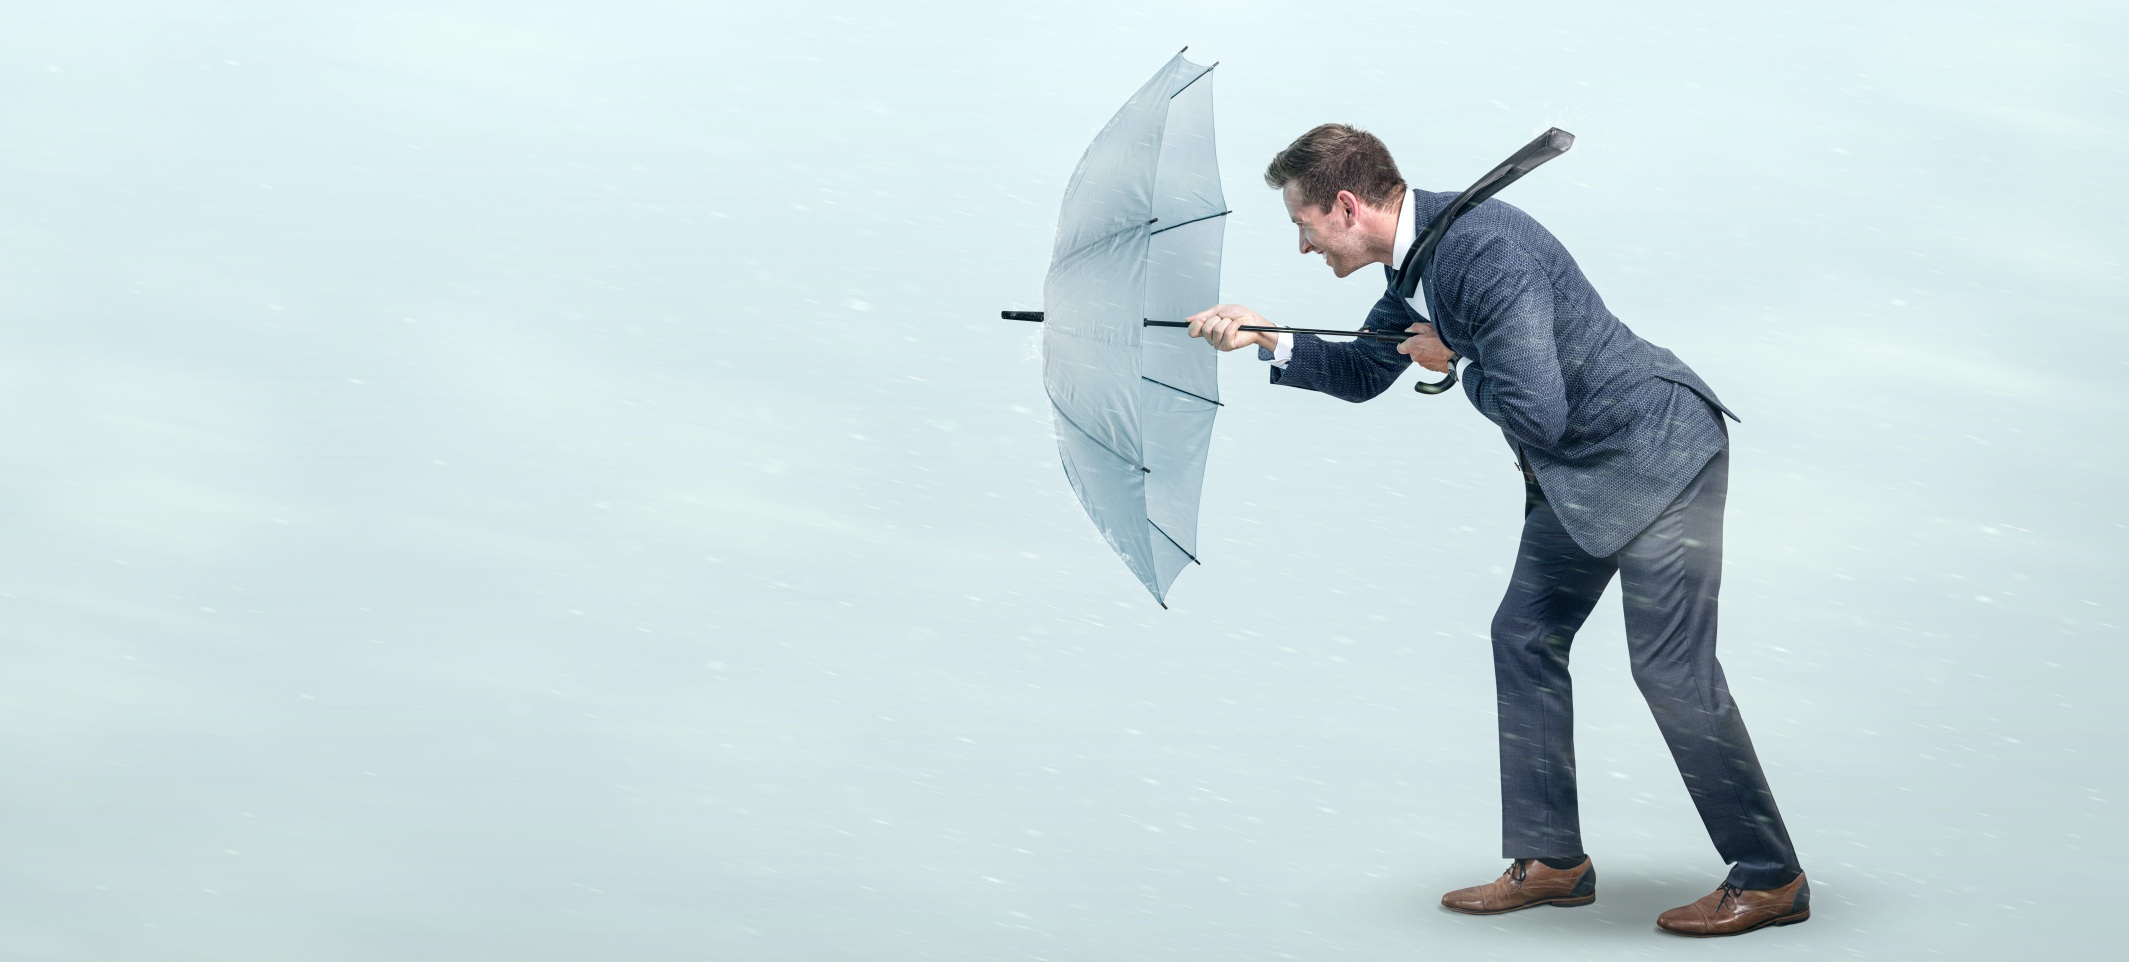 Resilienz - Mann mit Regenschirm leistet widerstand gegen den Sturm